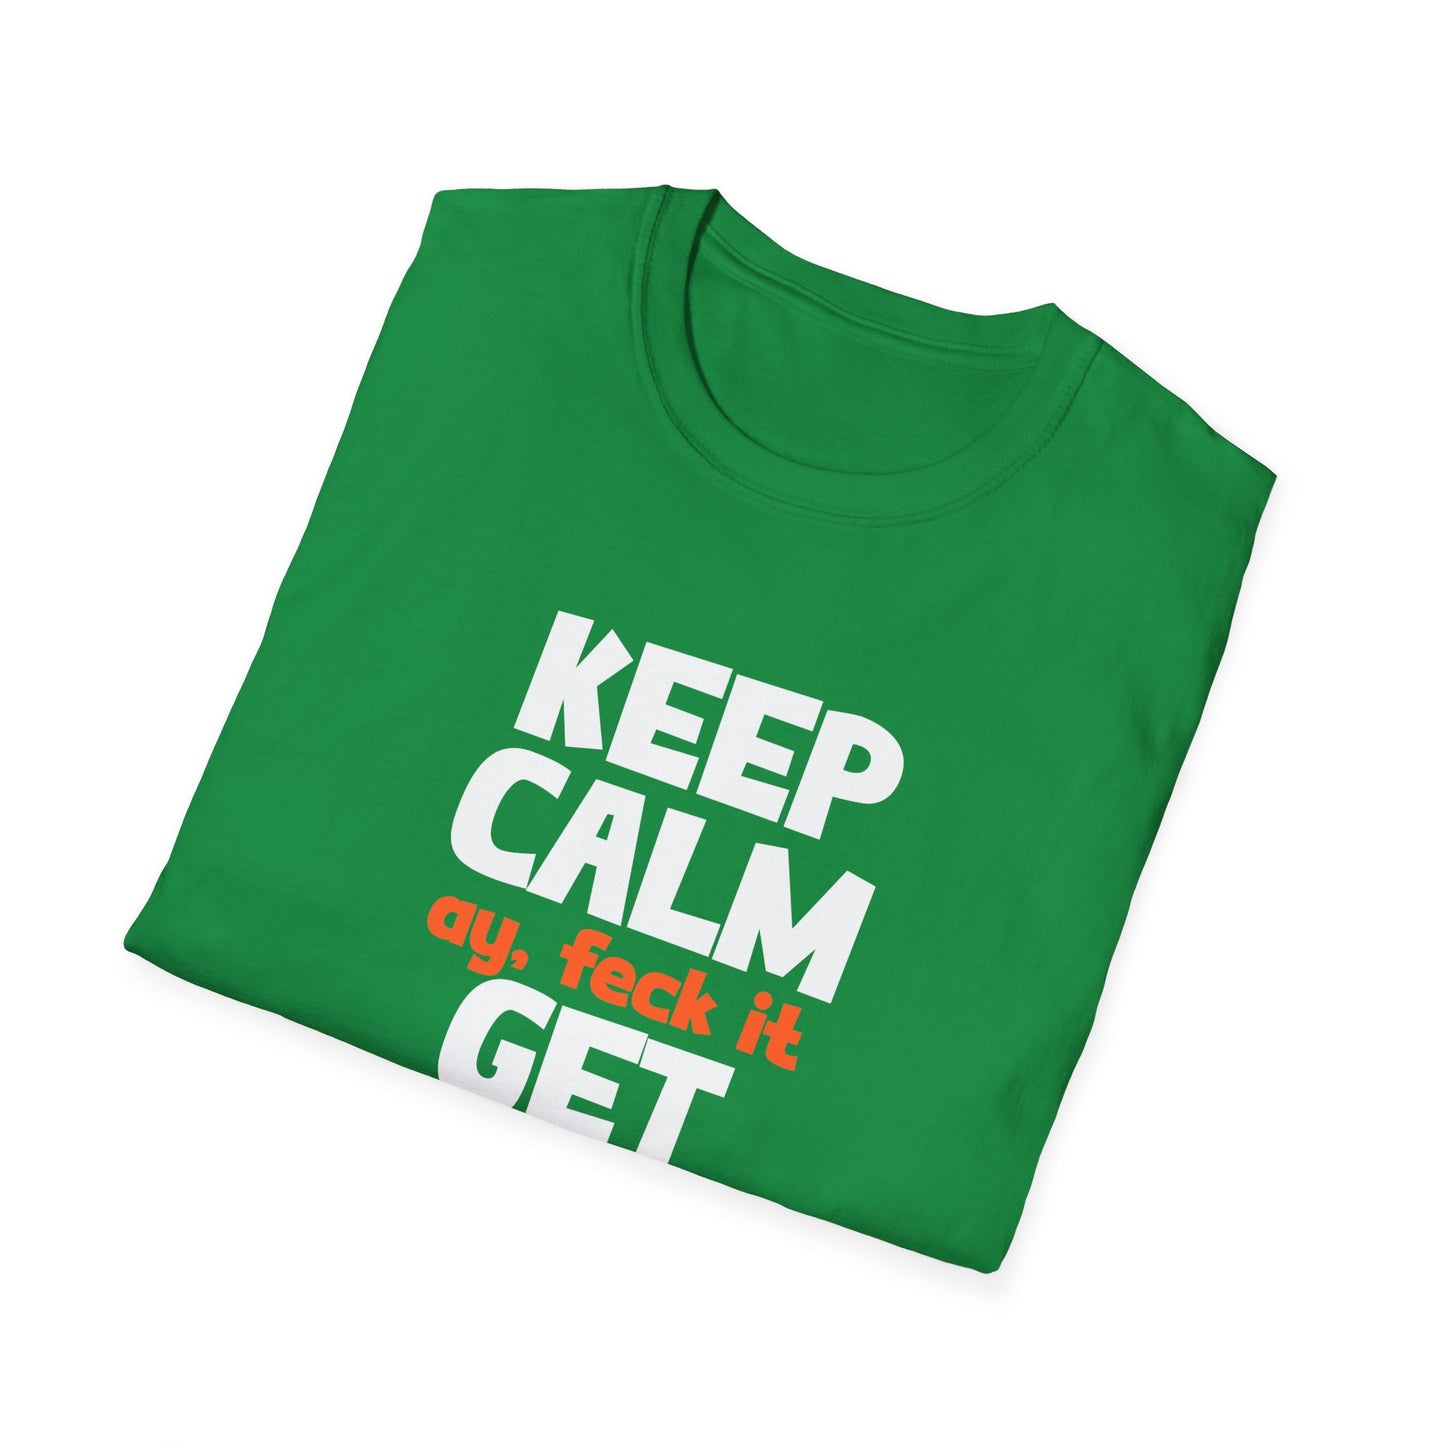 St. Patrick's Day Shirt, Keep Calm Get Even, Unisex Gildan Tee